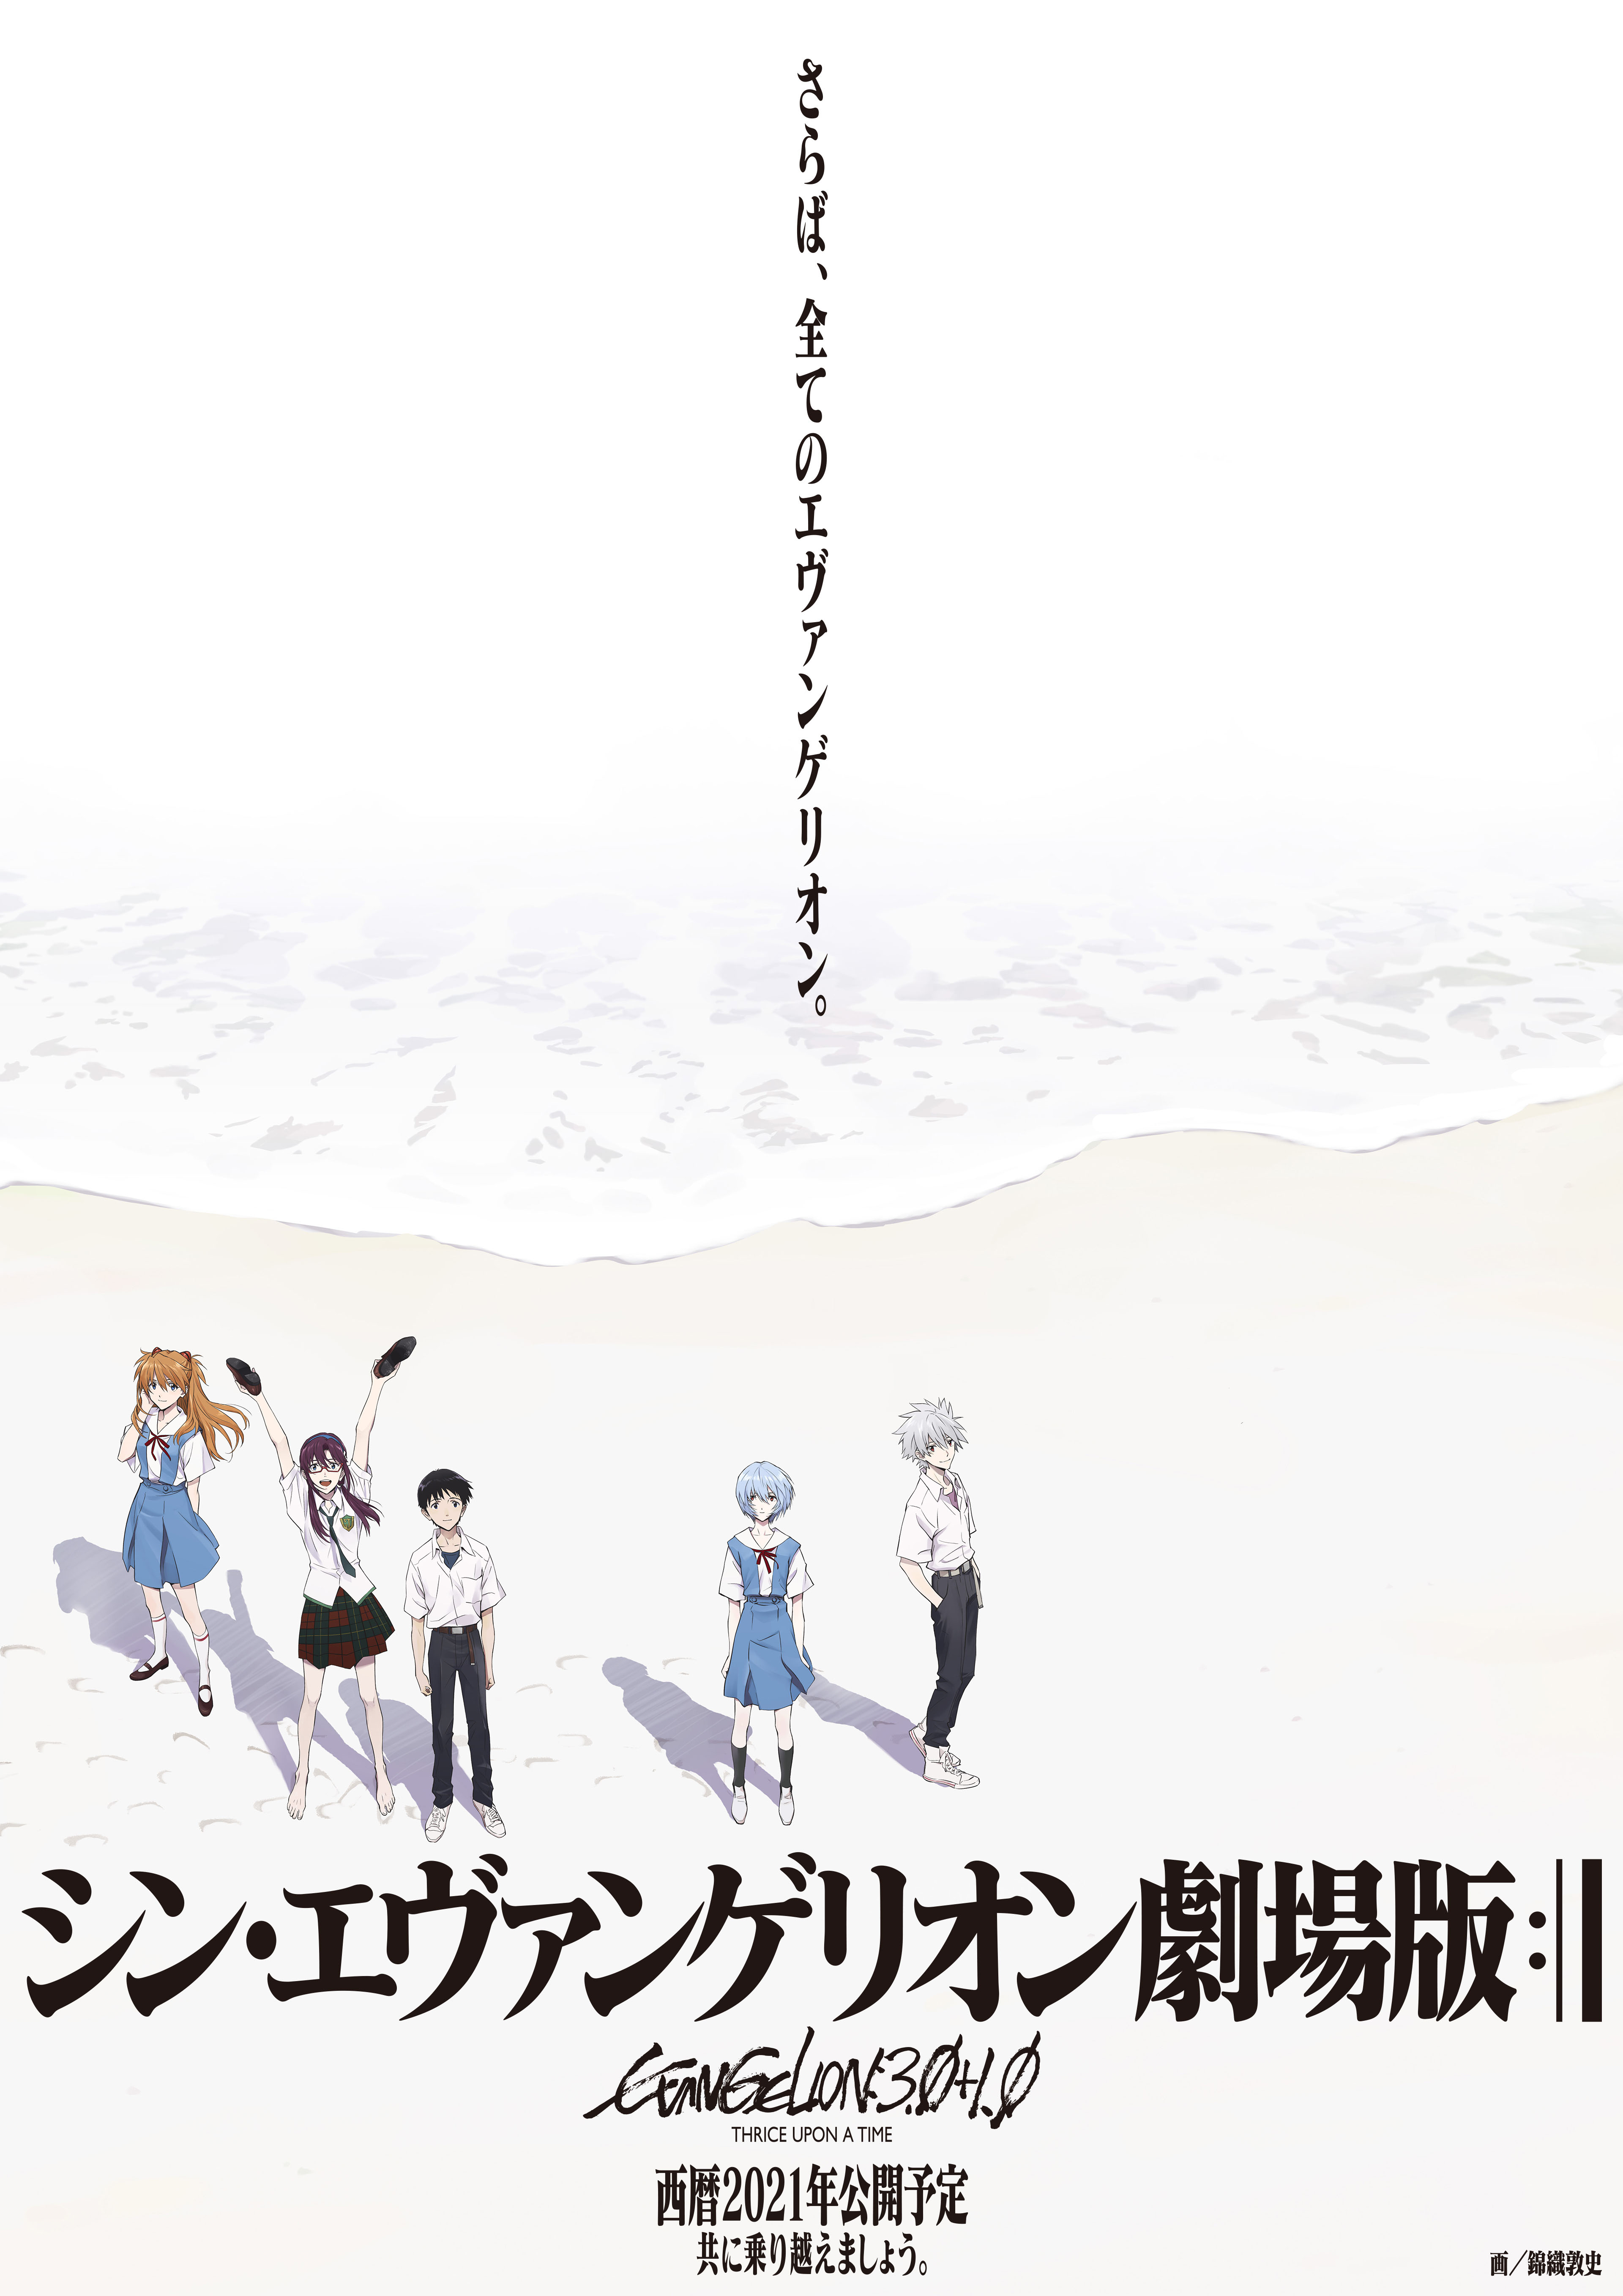 Imagem: Pôster promocional de Evangelion no site do Khara, com Shinji, Kaworu, Asuka, Rei e uma outra personagem, todos à distância. Há ainda a frase "Adeus, Evangelion", em japonês.